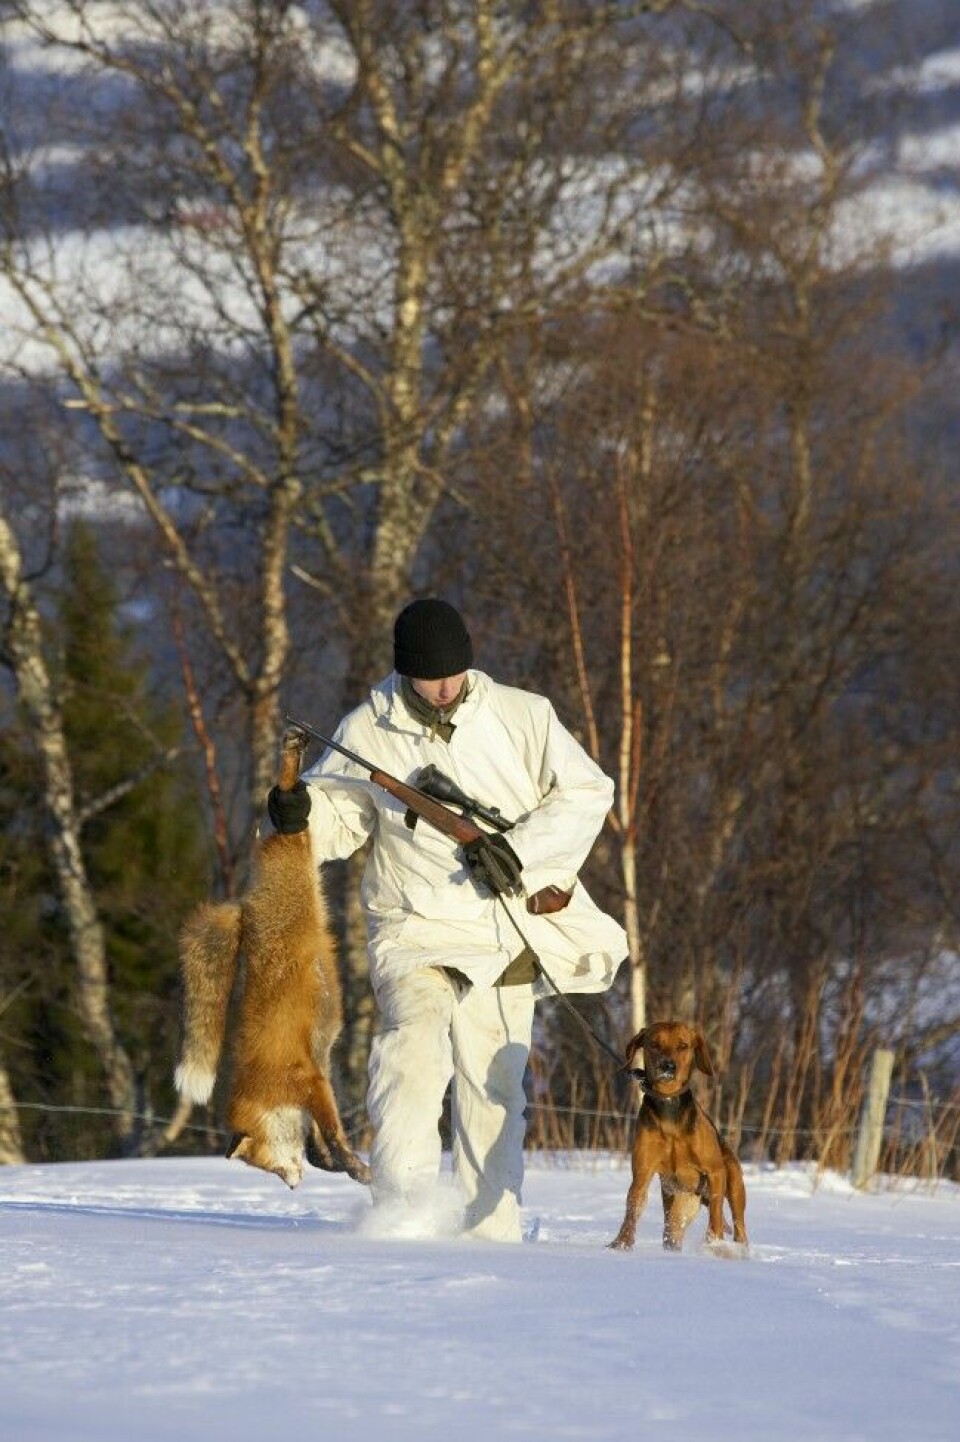 Vinteren er høytid for revejakt, da er også pelsen finest. Her er en schillerstøver etter en vellykket jakt.